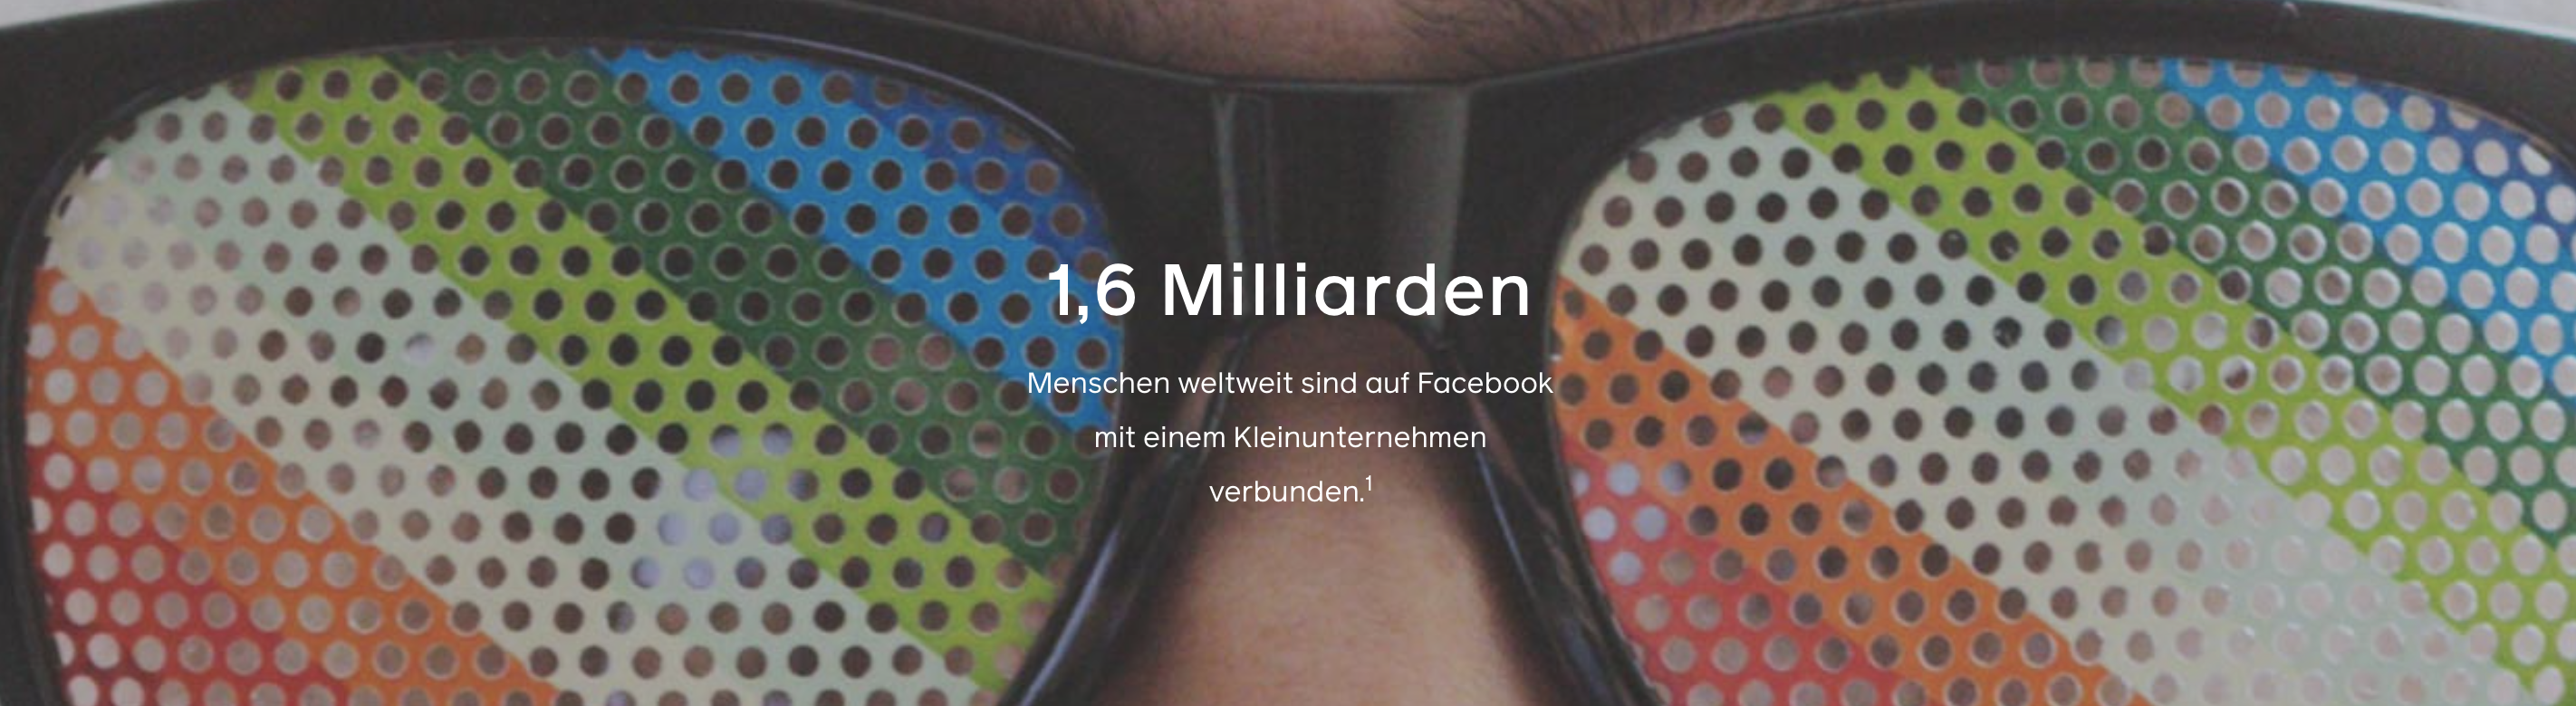 1.6 Milliarden Facebook Nutzer:innen B2B